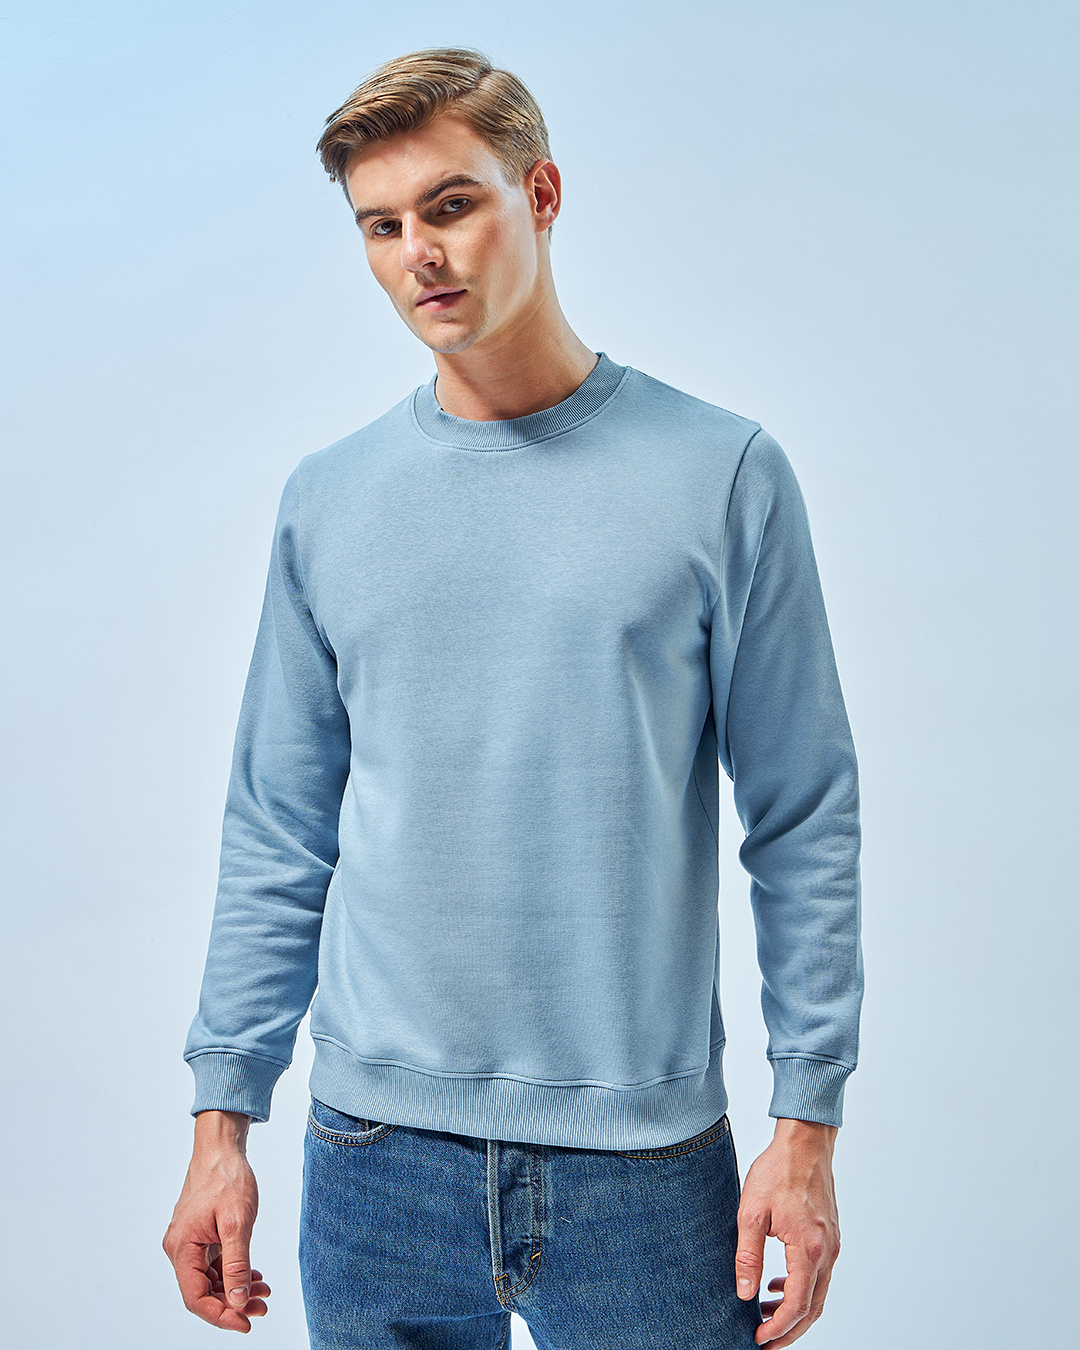 Buy Men's Blue Sweatshirt Online at Bewakoof